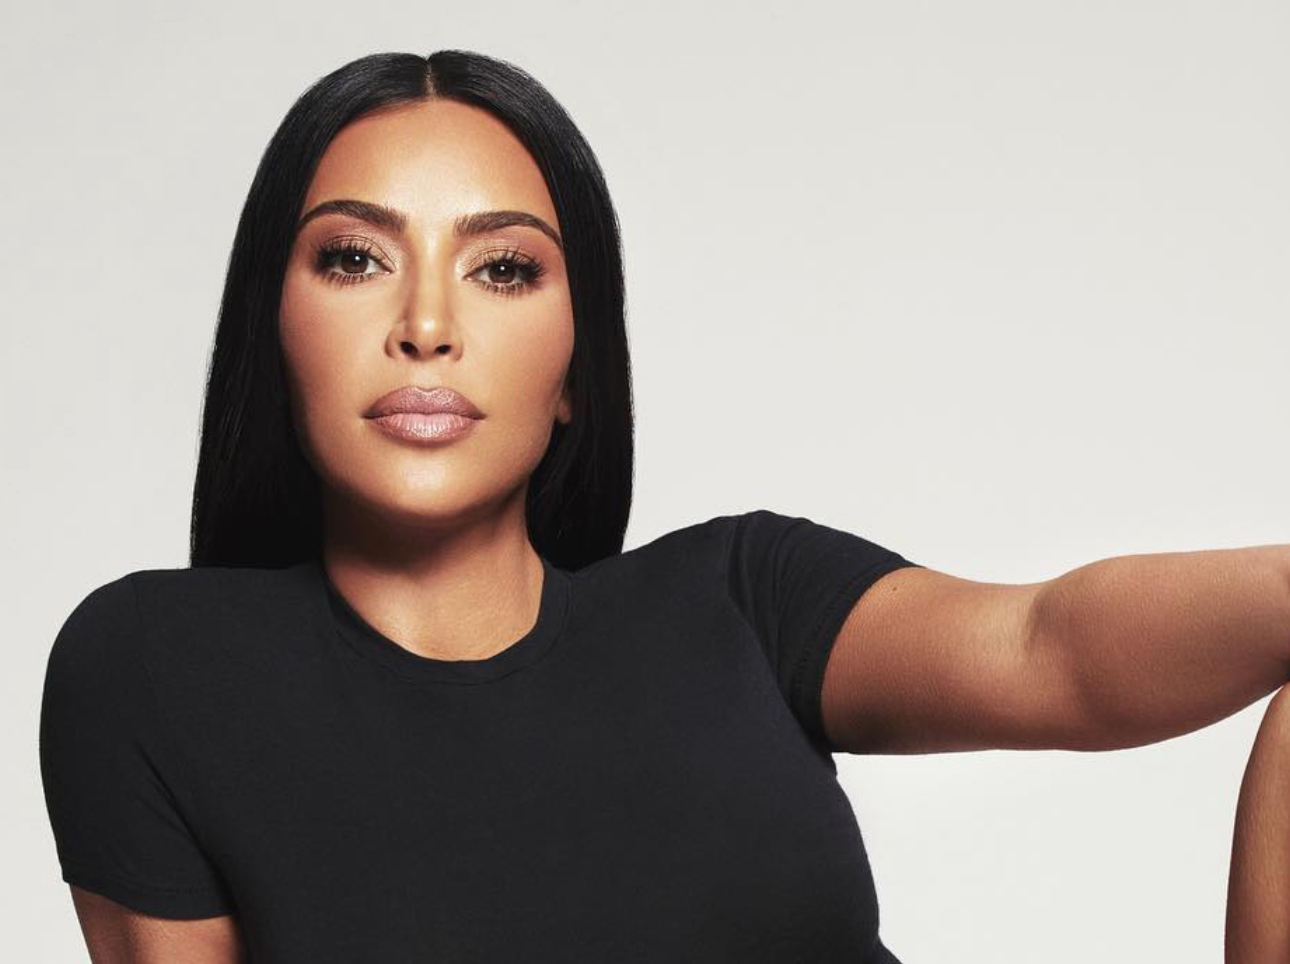 Kim Kardashian's SKIMS plans to open DC store